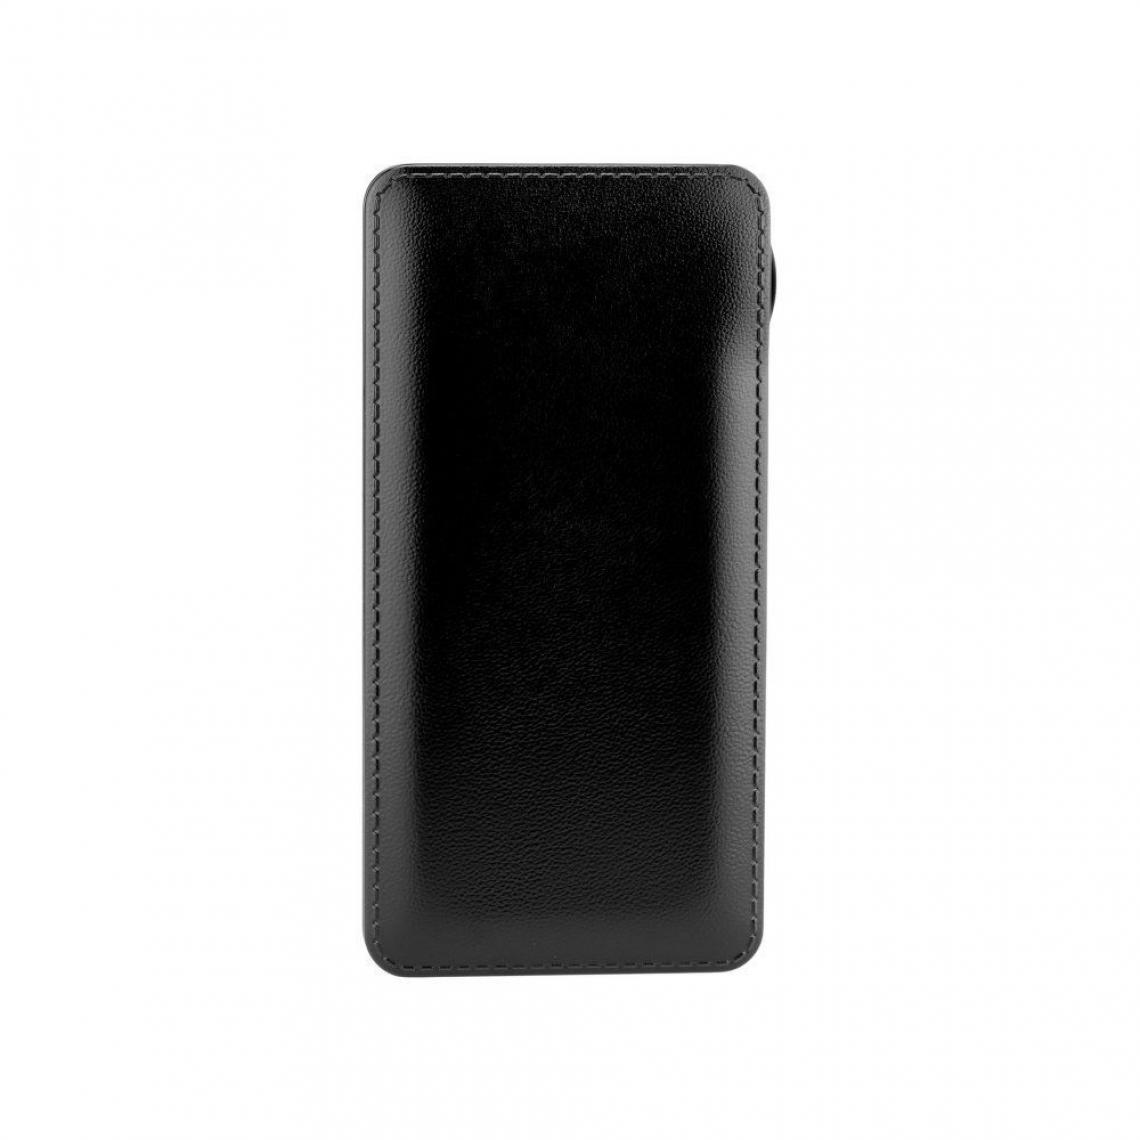 Ozzzo - Chargeur batterie externe 20000 mAh powerbank ozzzo noir pour Lenovo Tab 2 A7-30 - Autres accessoires smartphone